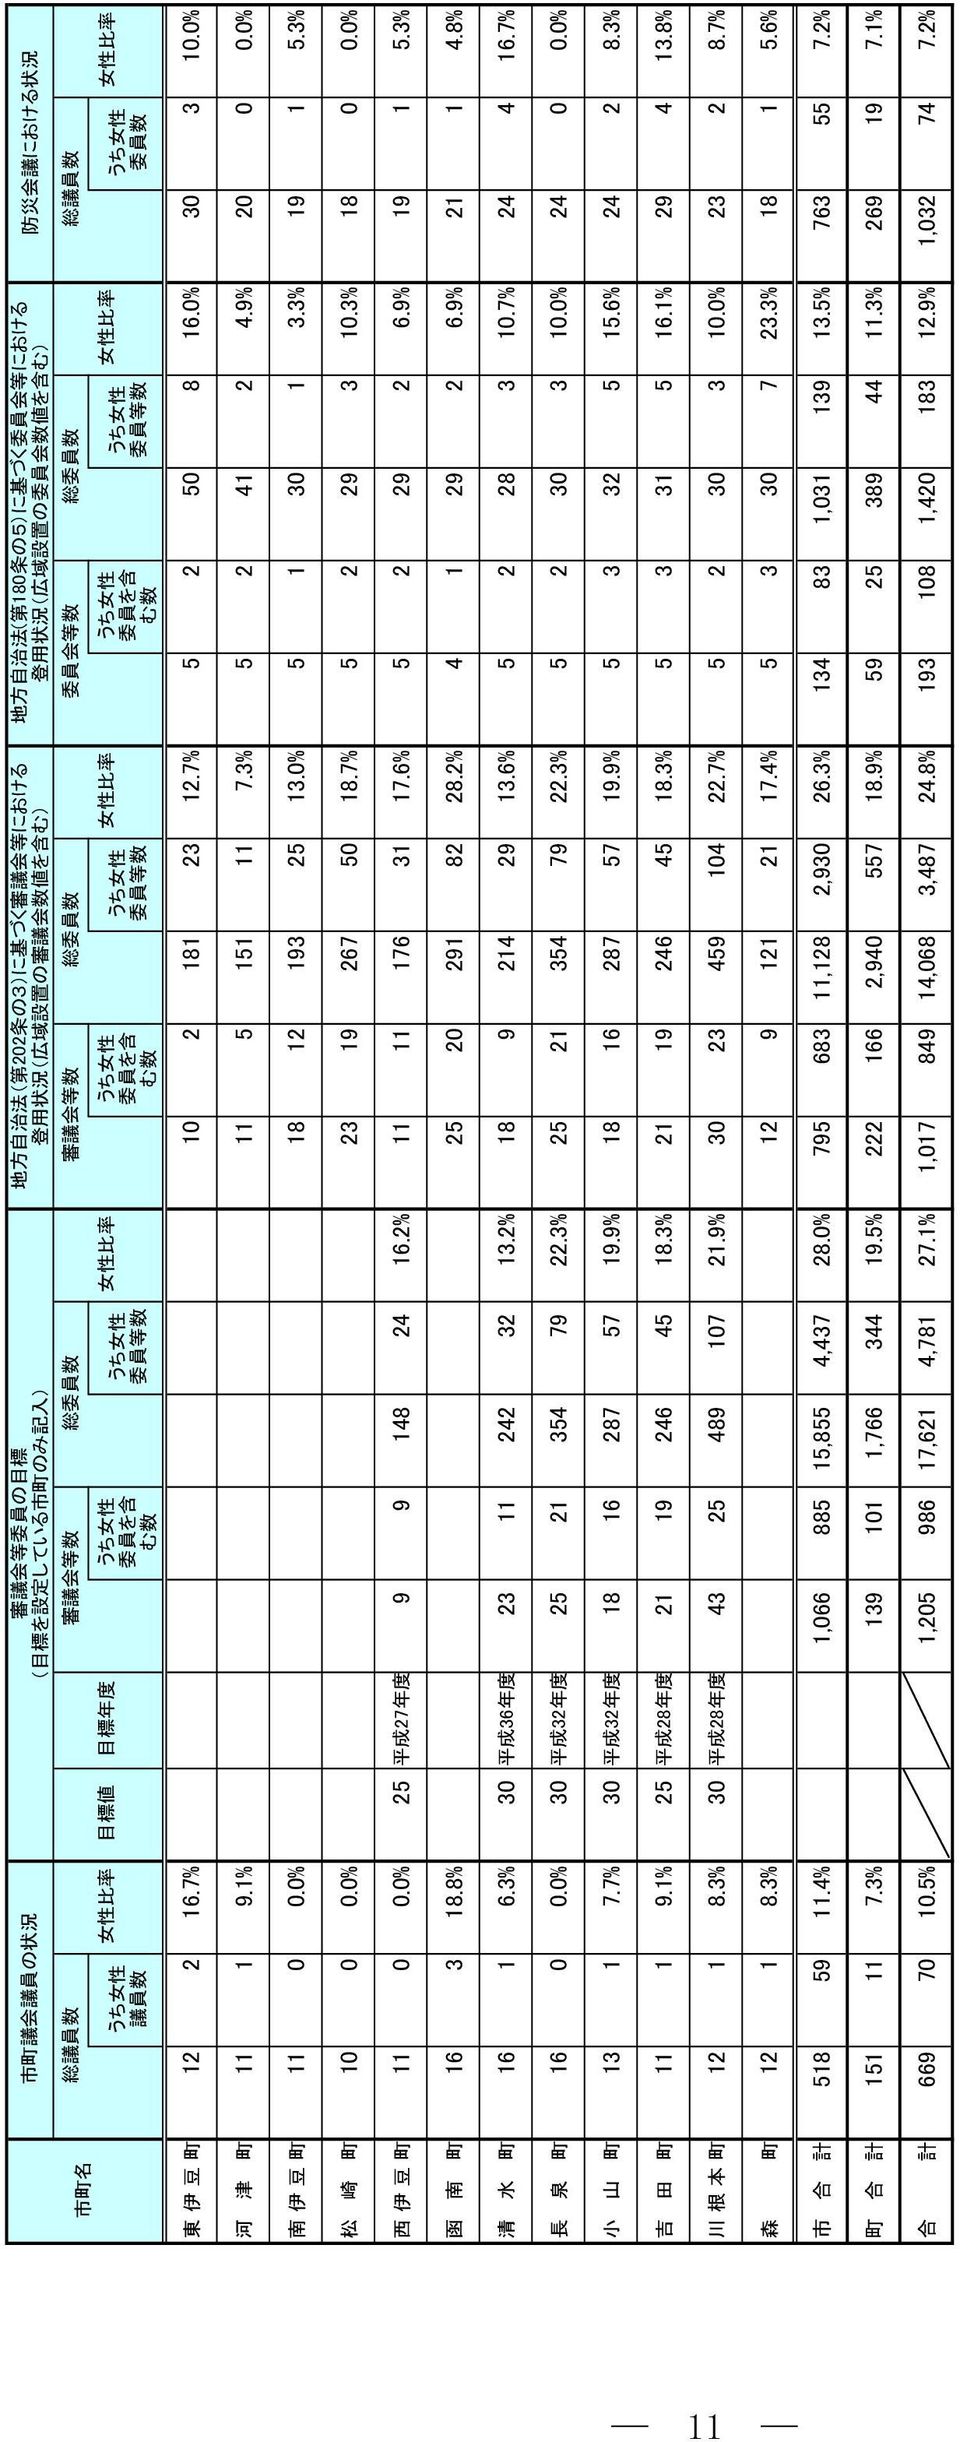 議 員 数 委 員 数 女 性 東 伊 豆 町 2 2 6.7% 2 8 23 2.7% 5 2 5 8 6.% 3 3.% 河 津 町 9.% 5 5 7.3% 5 2 4 2 4.9% 2.% 南 伊 豆 町.% 8 2 93 25 3.% 5 3 3.3% 9 5.3% 松 崎 町.% 23 9 267 5 8.7% 5 2 29 3.3% 8.% 西 伊 豆 町.